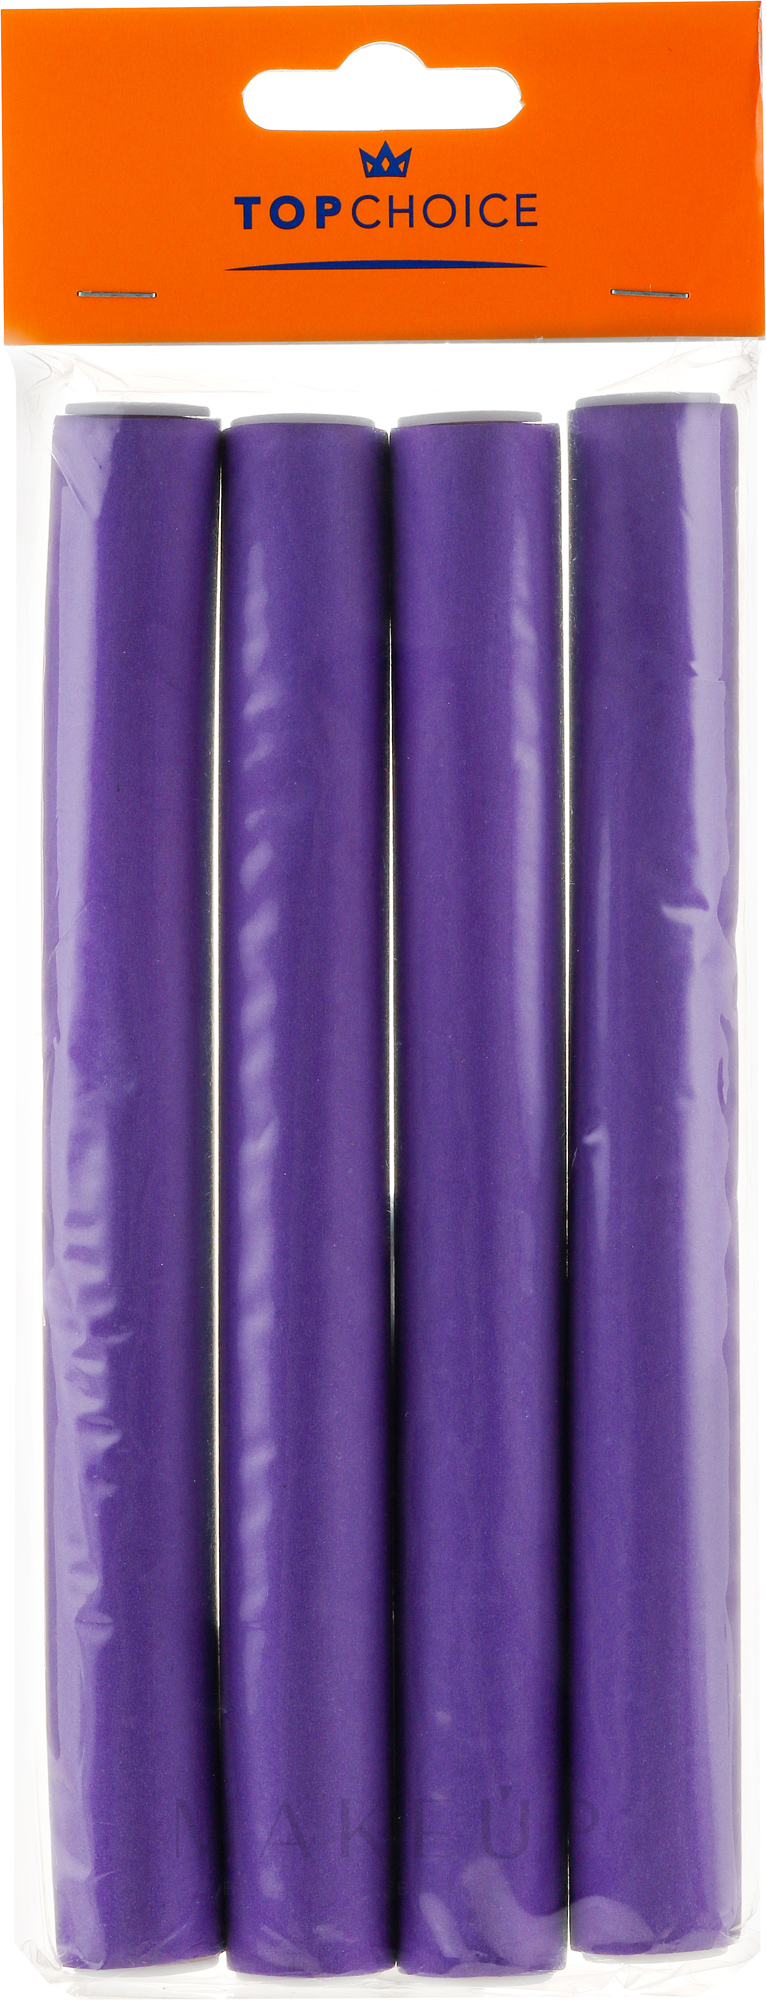 Papilloten XL 4 St. - Top Choice Flex Hair Rods 20mm — Bild 4 St.